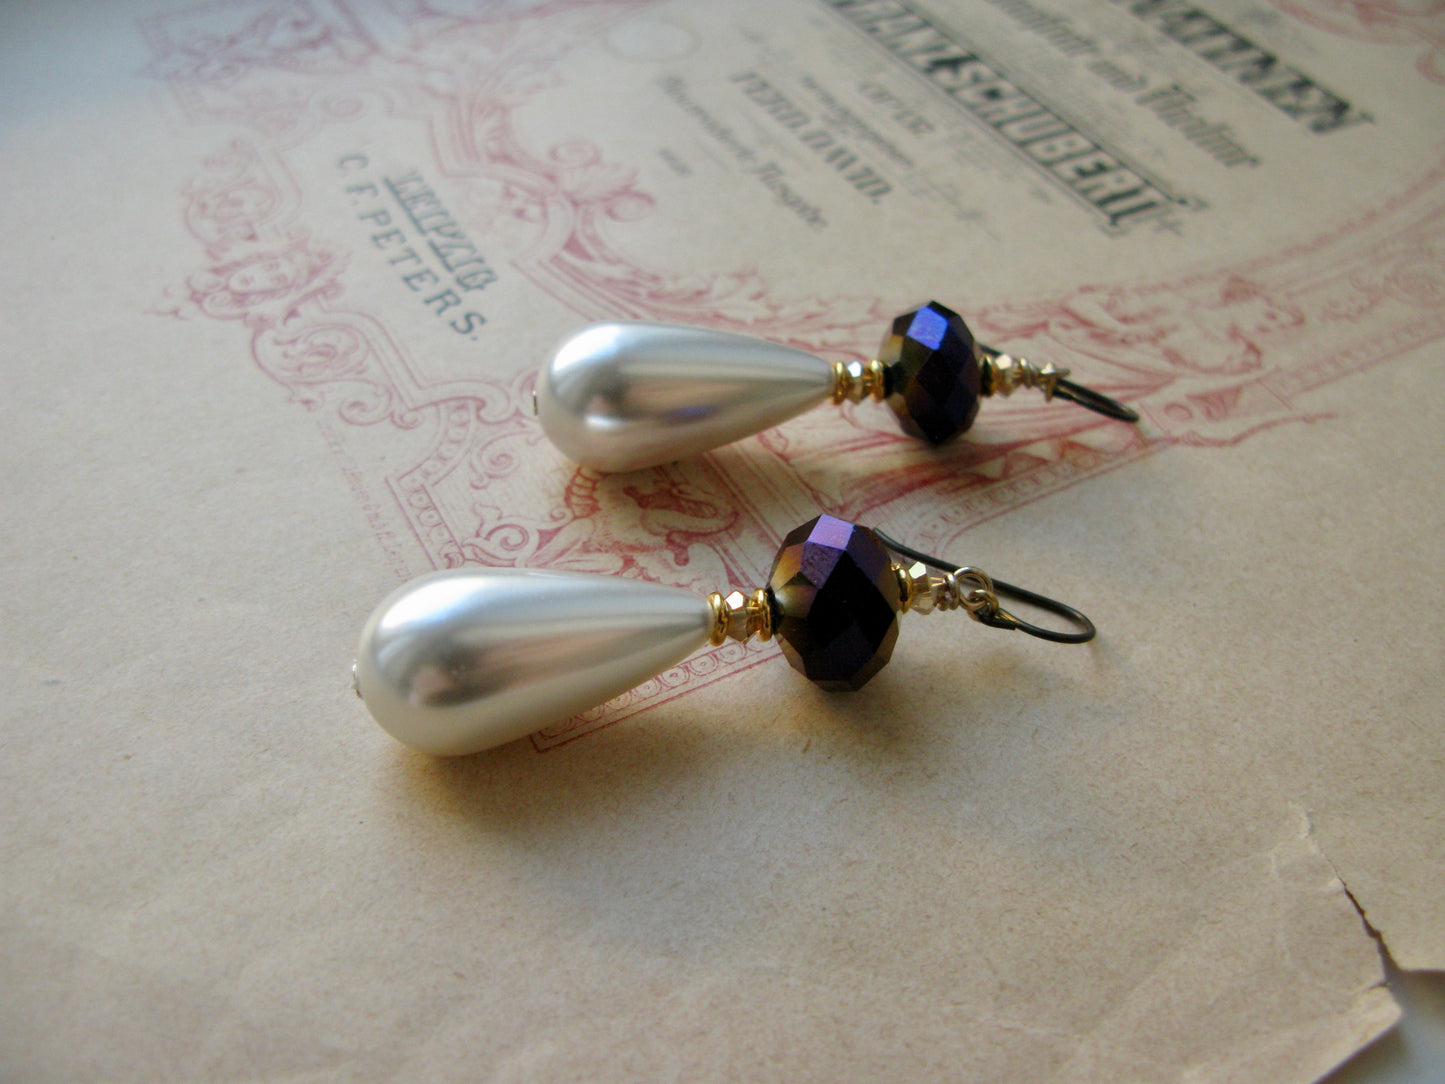 La Perle earrings